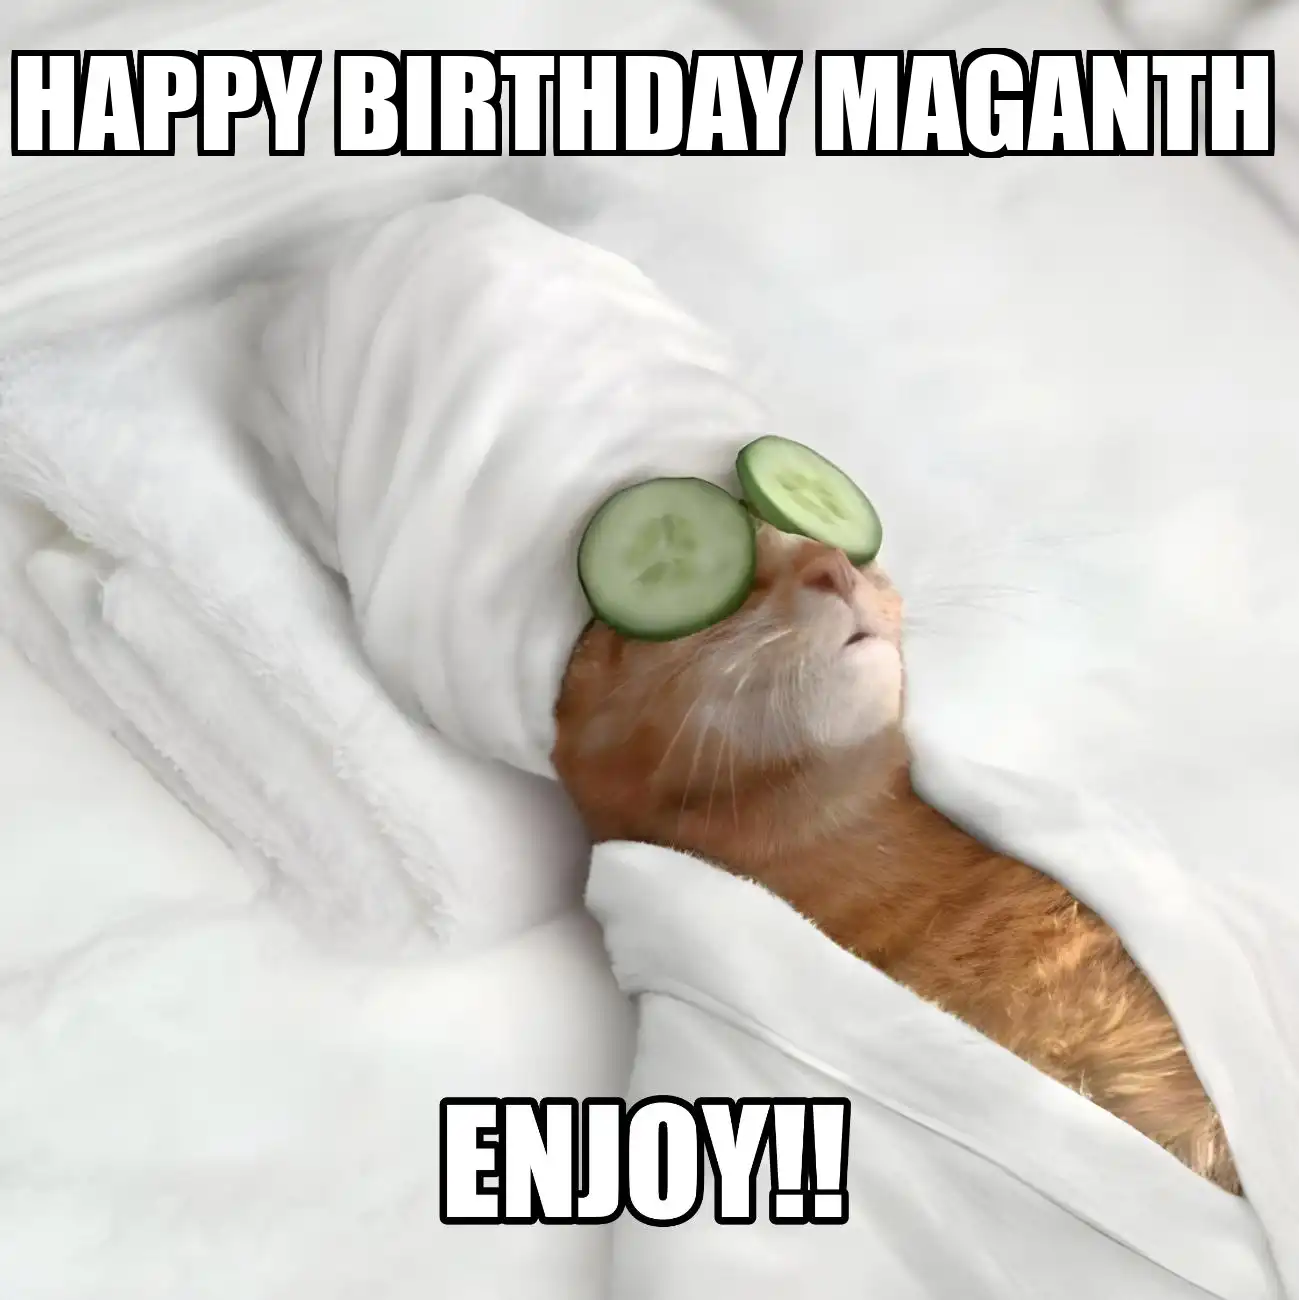 Happy Birthday Maganth Enjoy Cat Meme